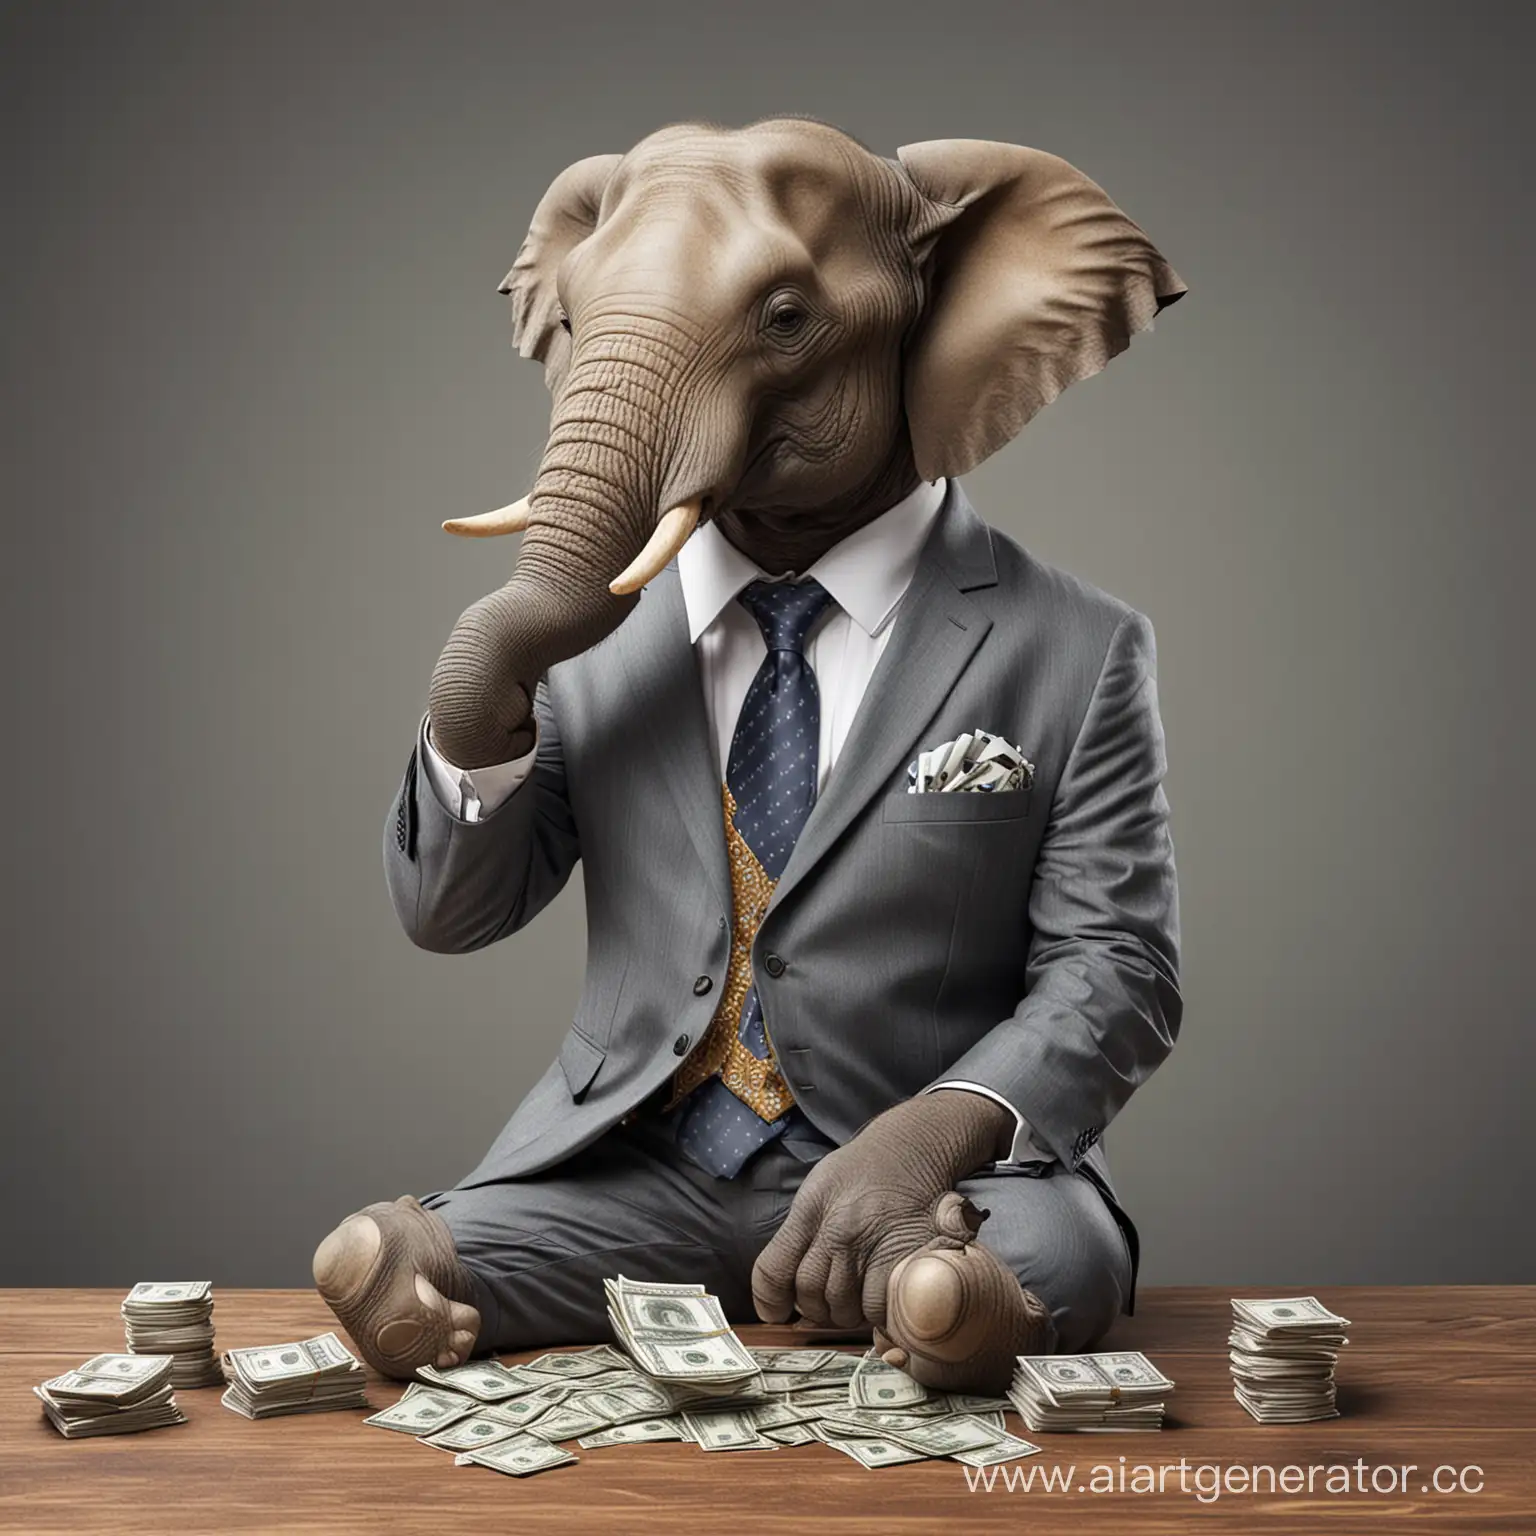 Слон в деловом костюме, который сидит с деньгами и делает ставки на спорт